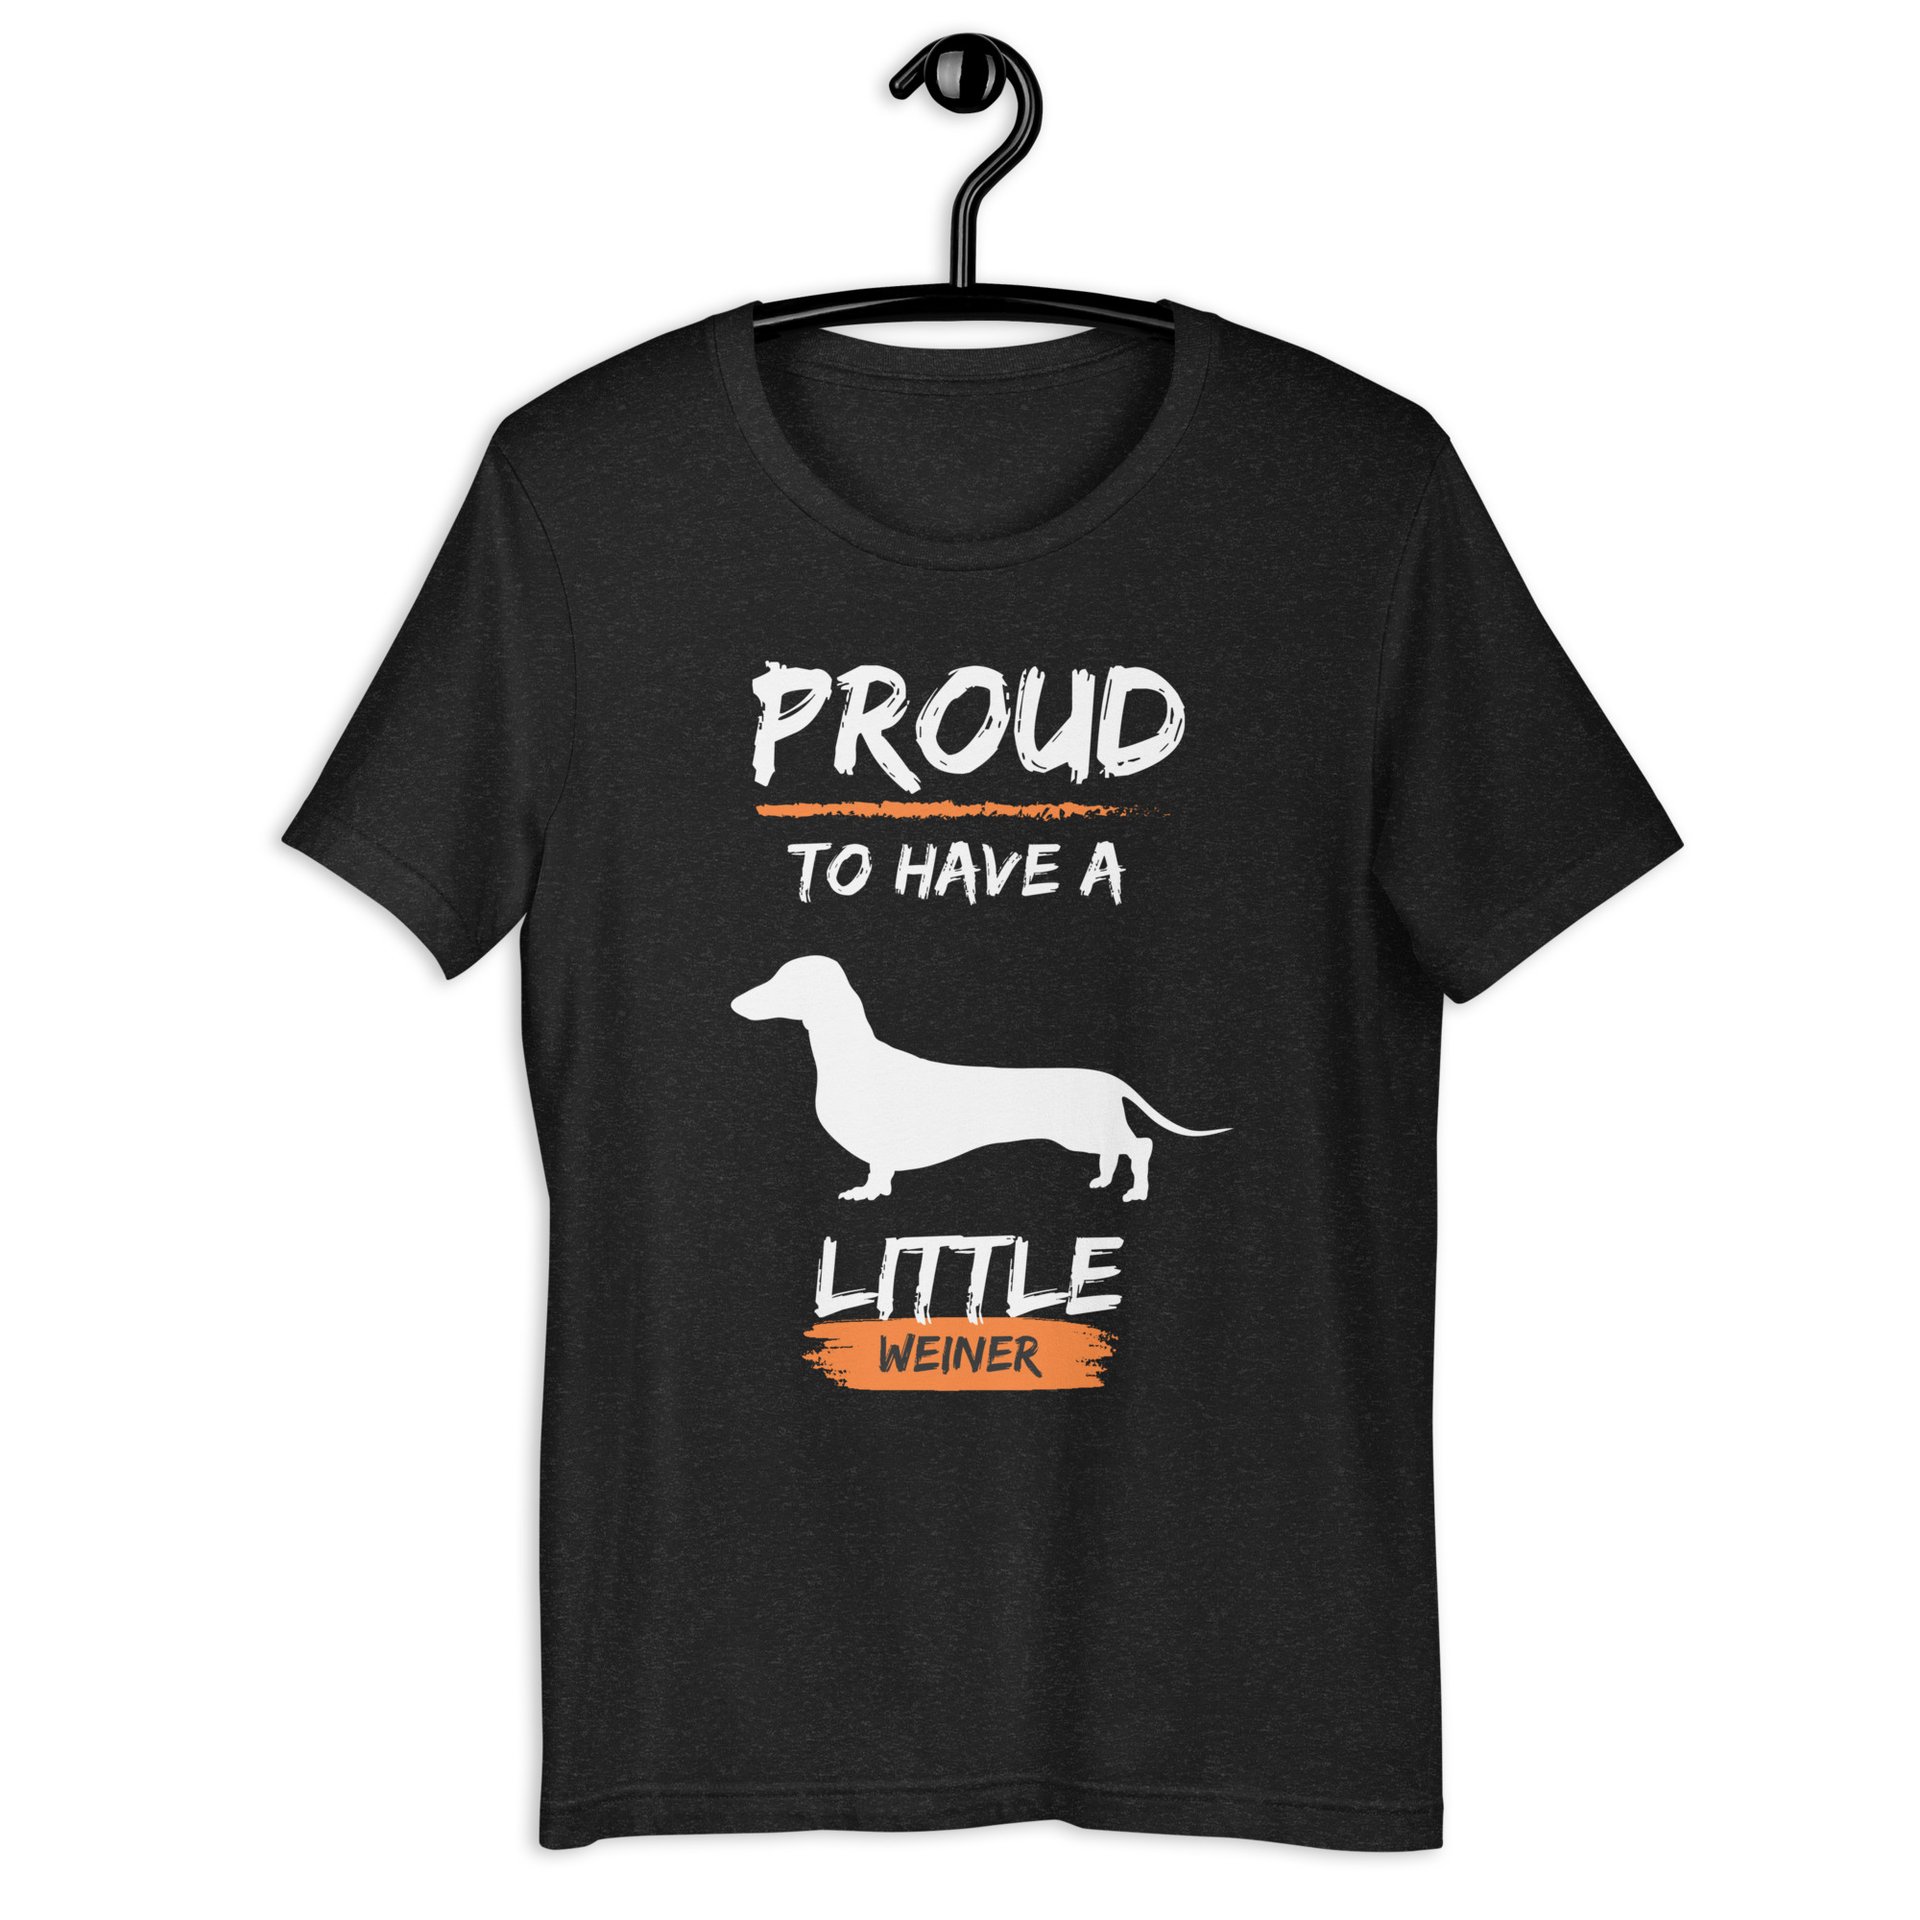 Proud To Have Little Weiner Unisex T-Shirt. Black Heather